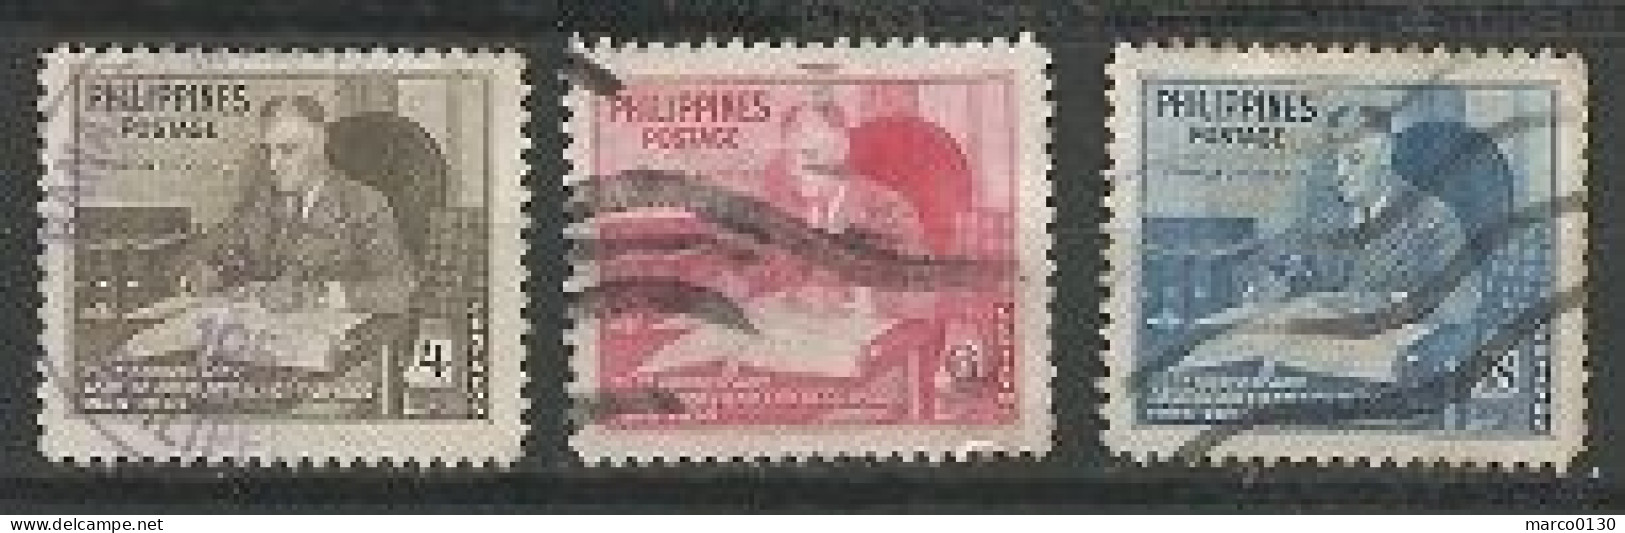 PHILIPPINES N° 363 + N° 364 + N° 365 OBLITERE - Filippine